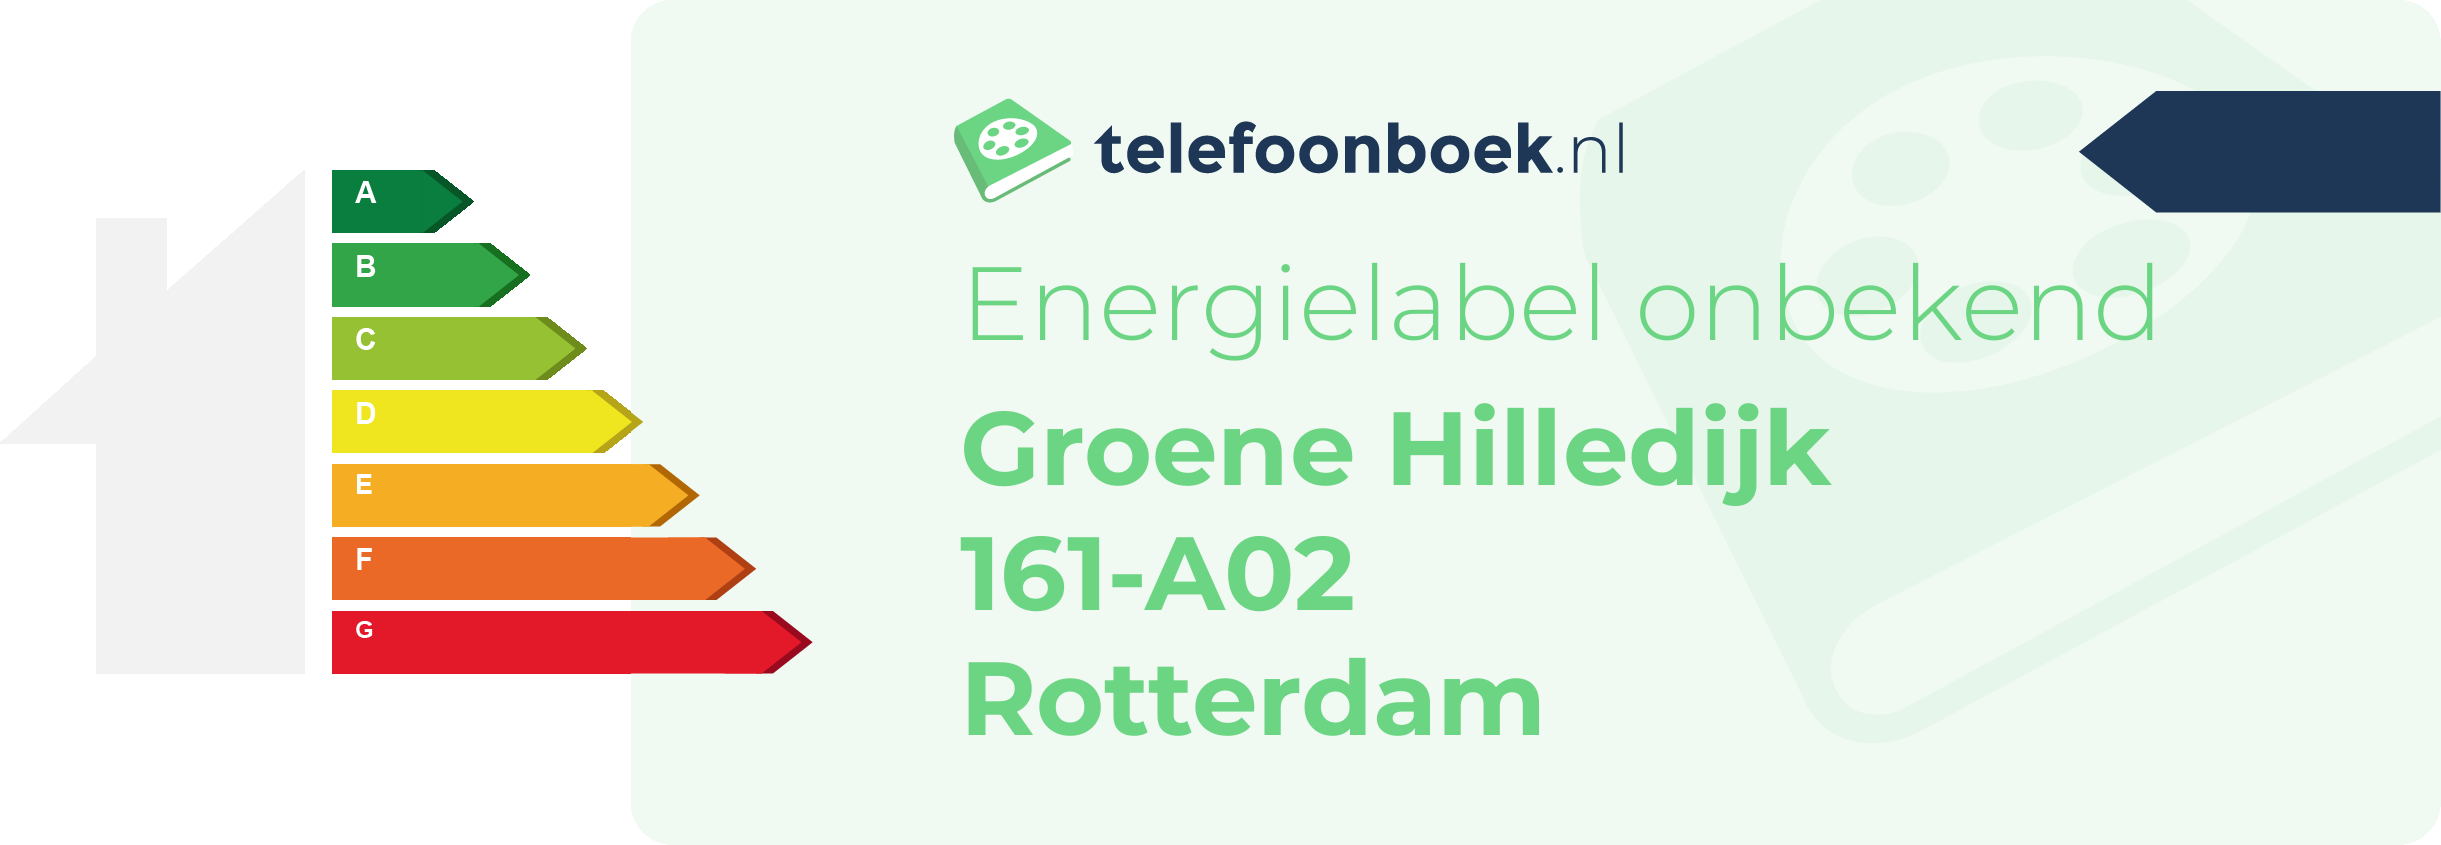 Energielabel Groene Hilledijk 161-A02 Rotterdam